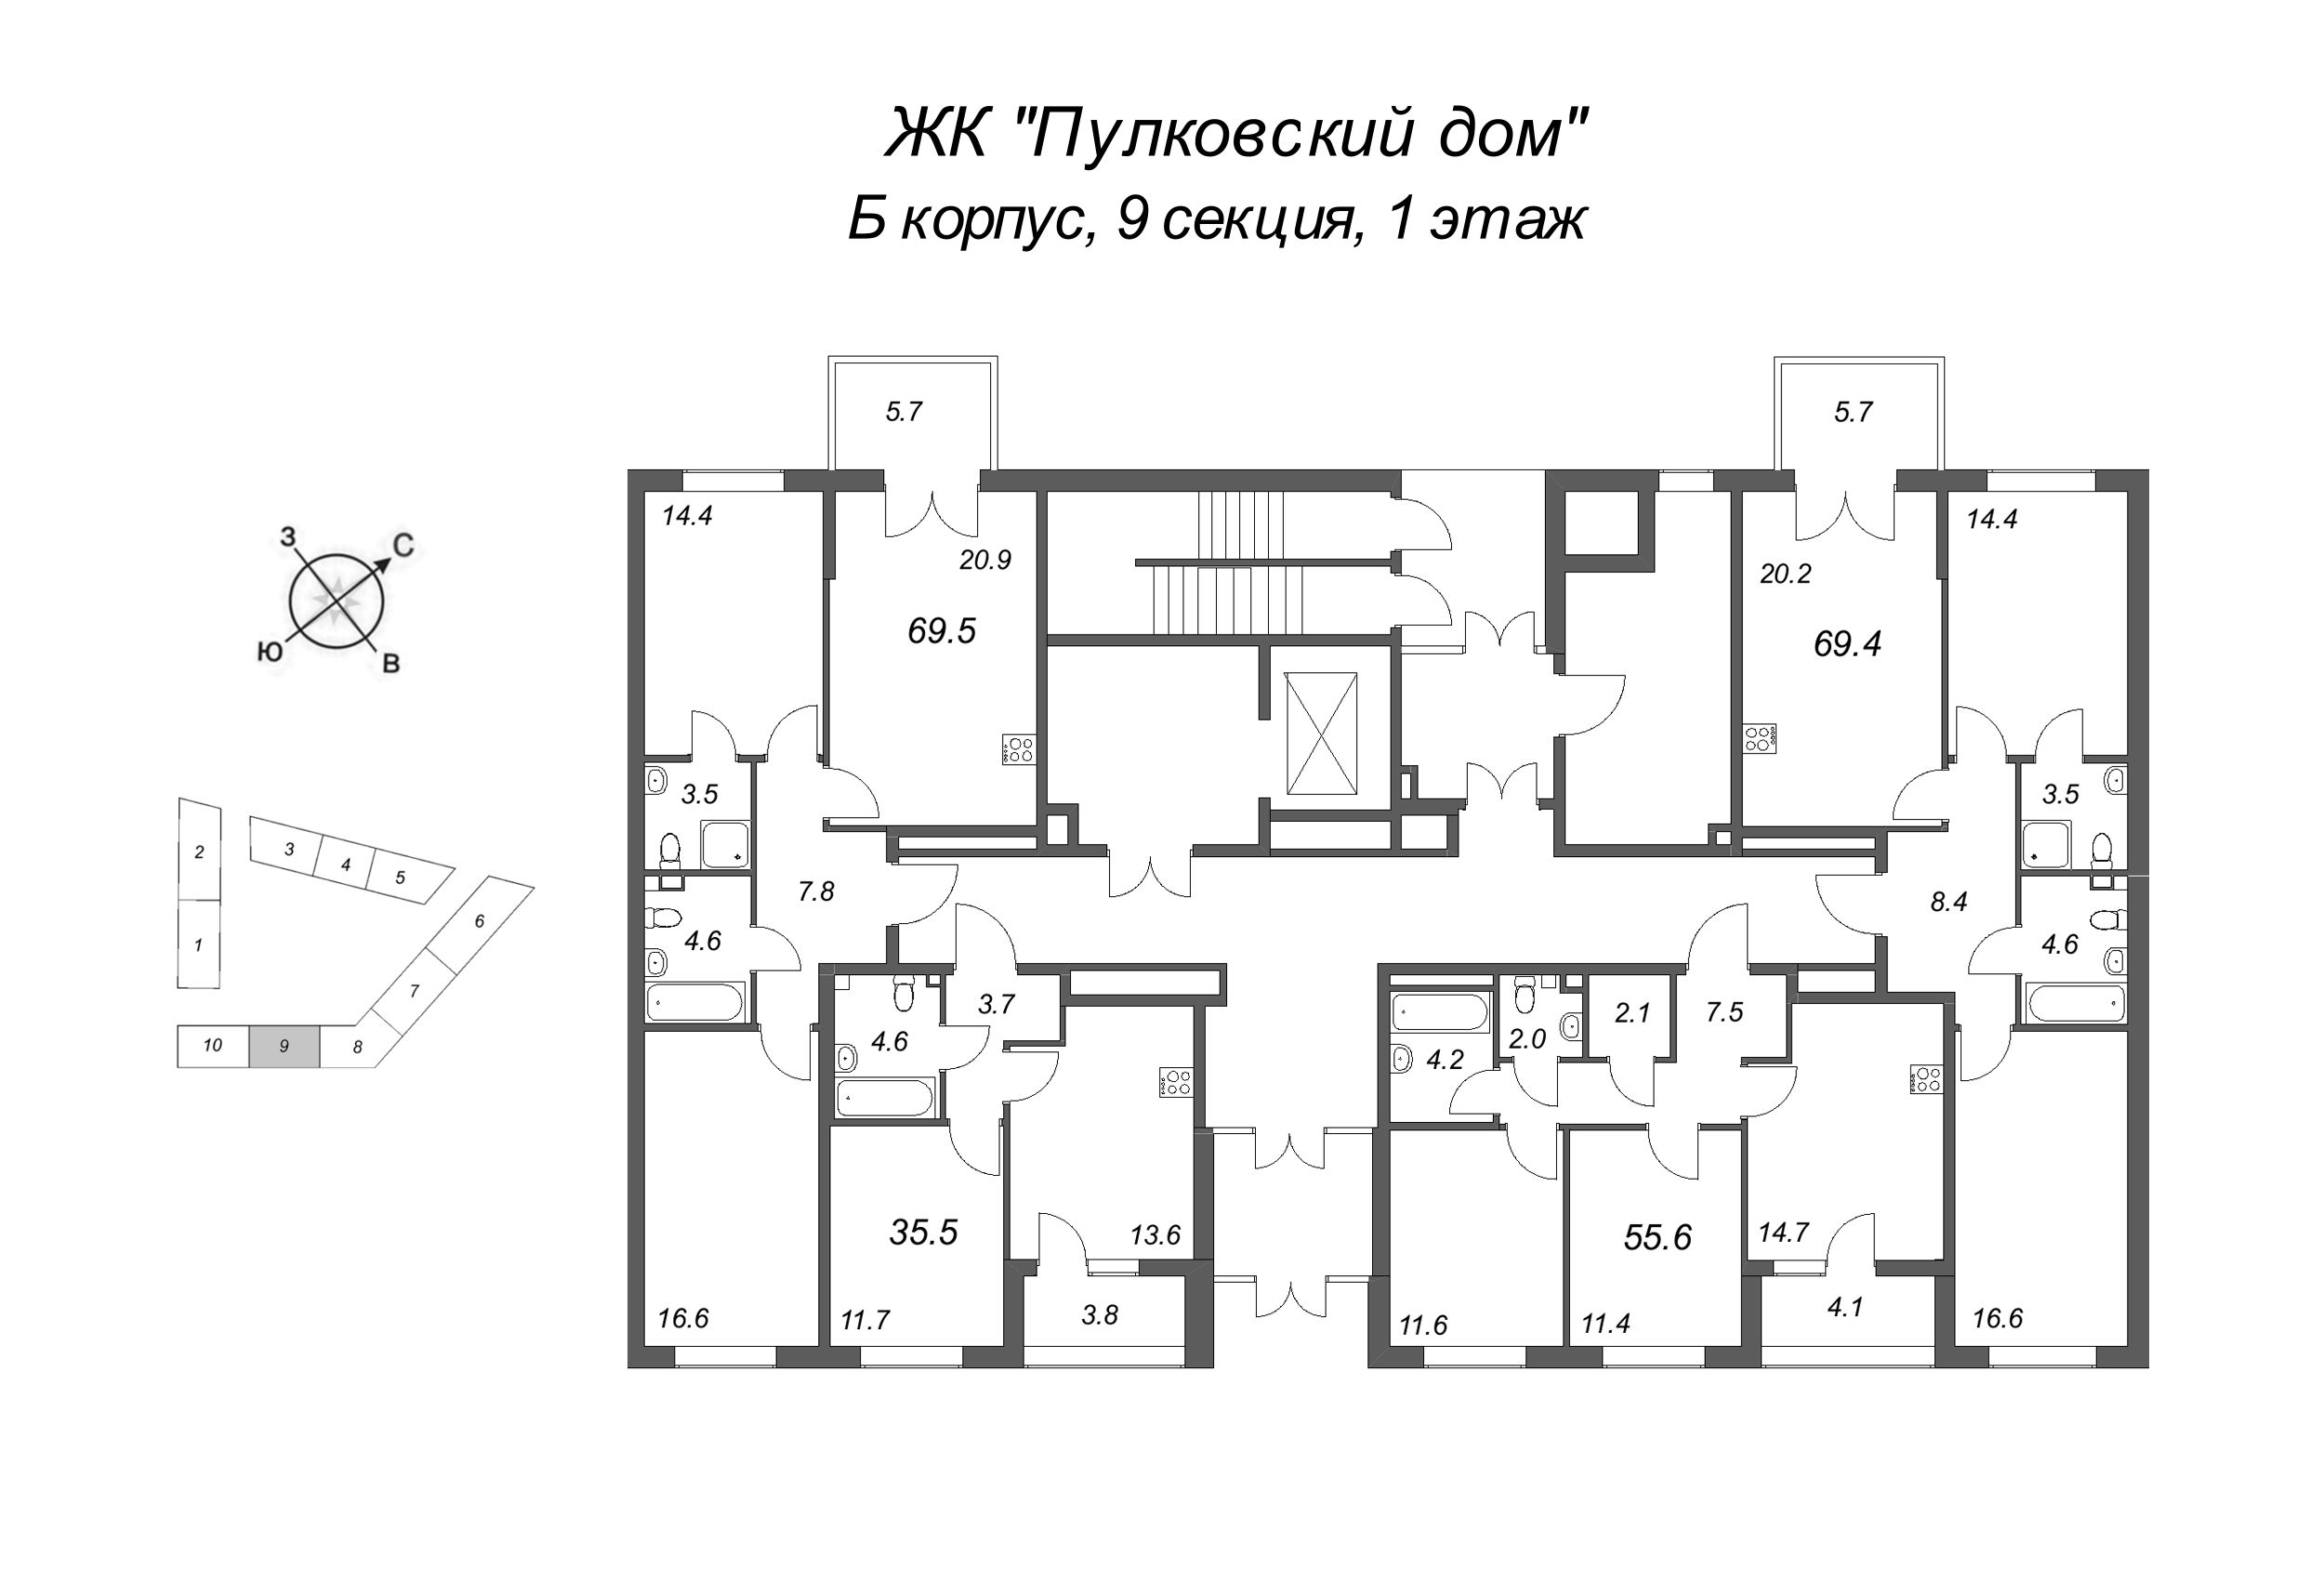 3-комнатная (Евро) квартира, 69.4 м² в ЖК "Пулковский дом" - планировка этажа